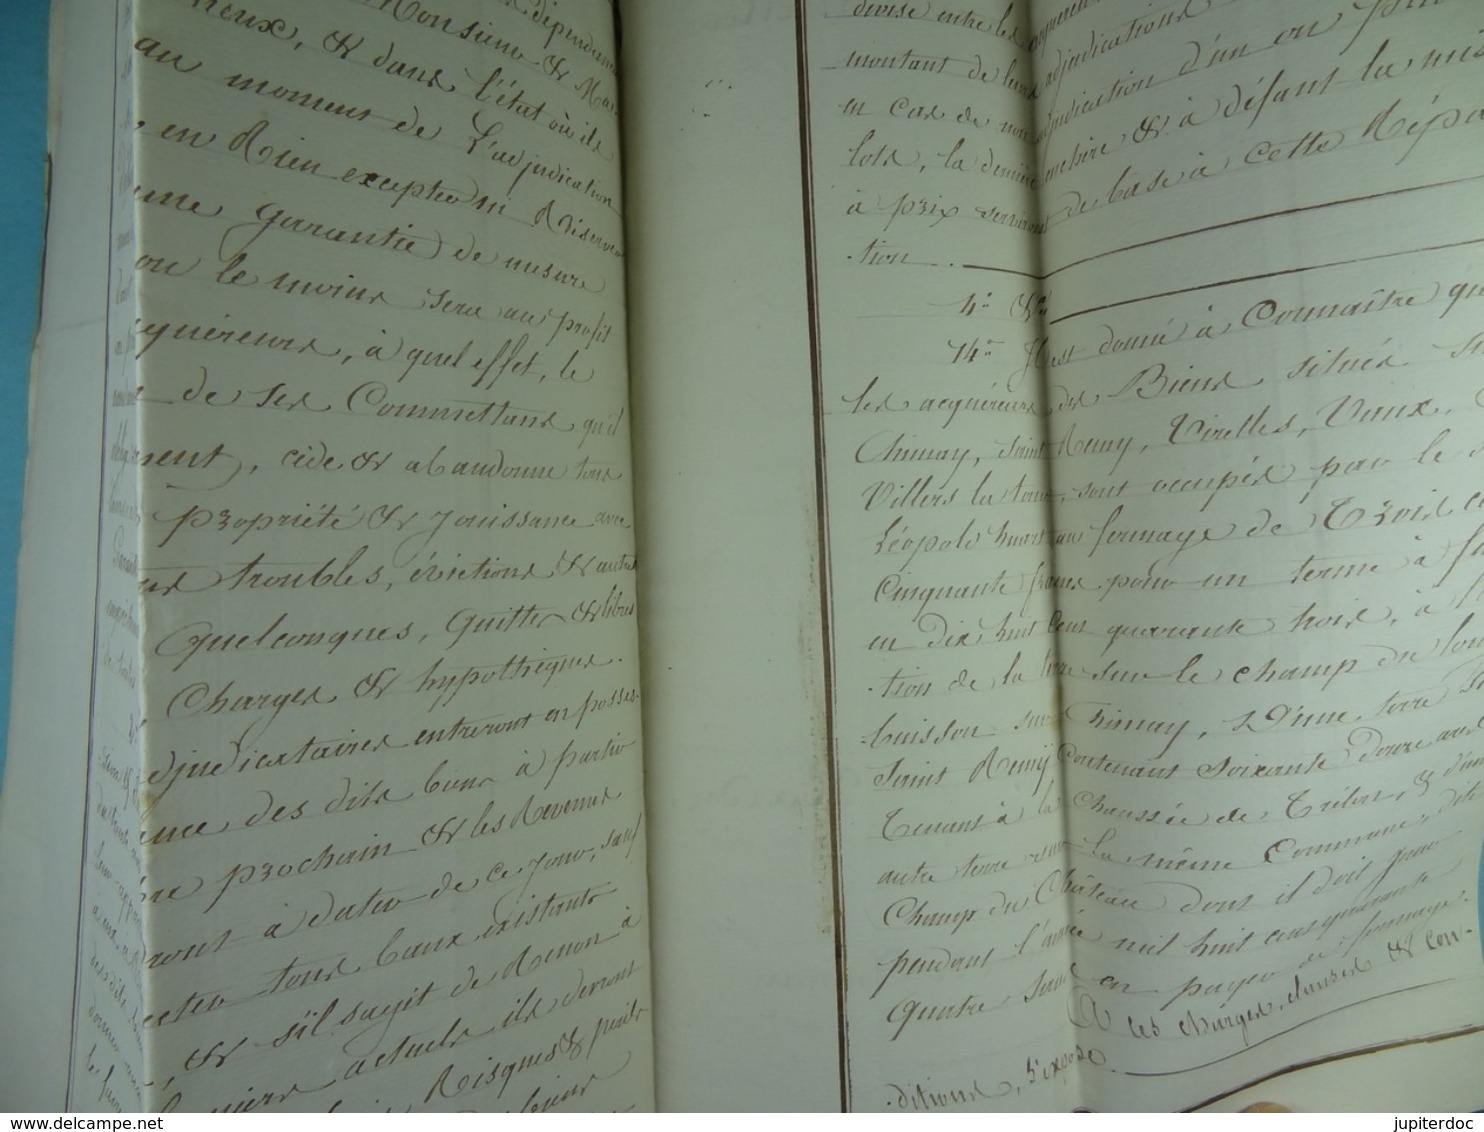 Acte notarié 1841 Acquisition par Hardy de Vaulx de terres au Baron de Bagenrieux de Lanquesaint /18/